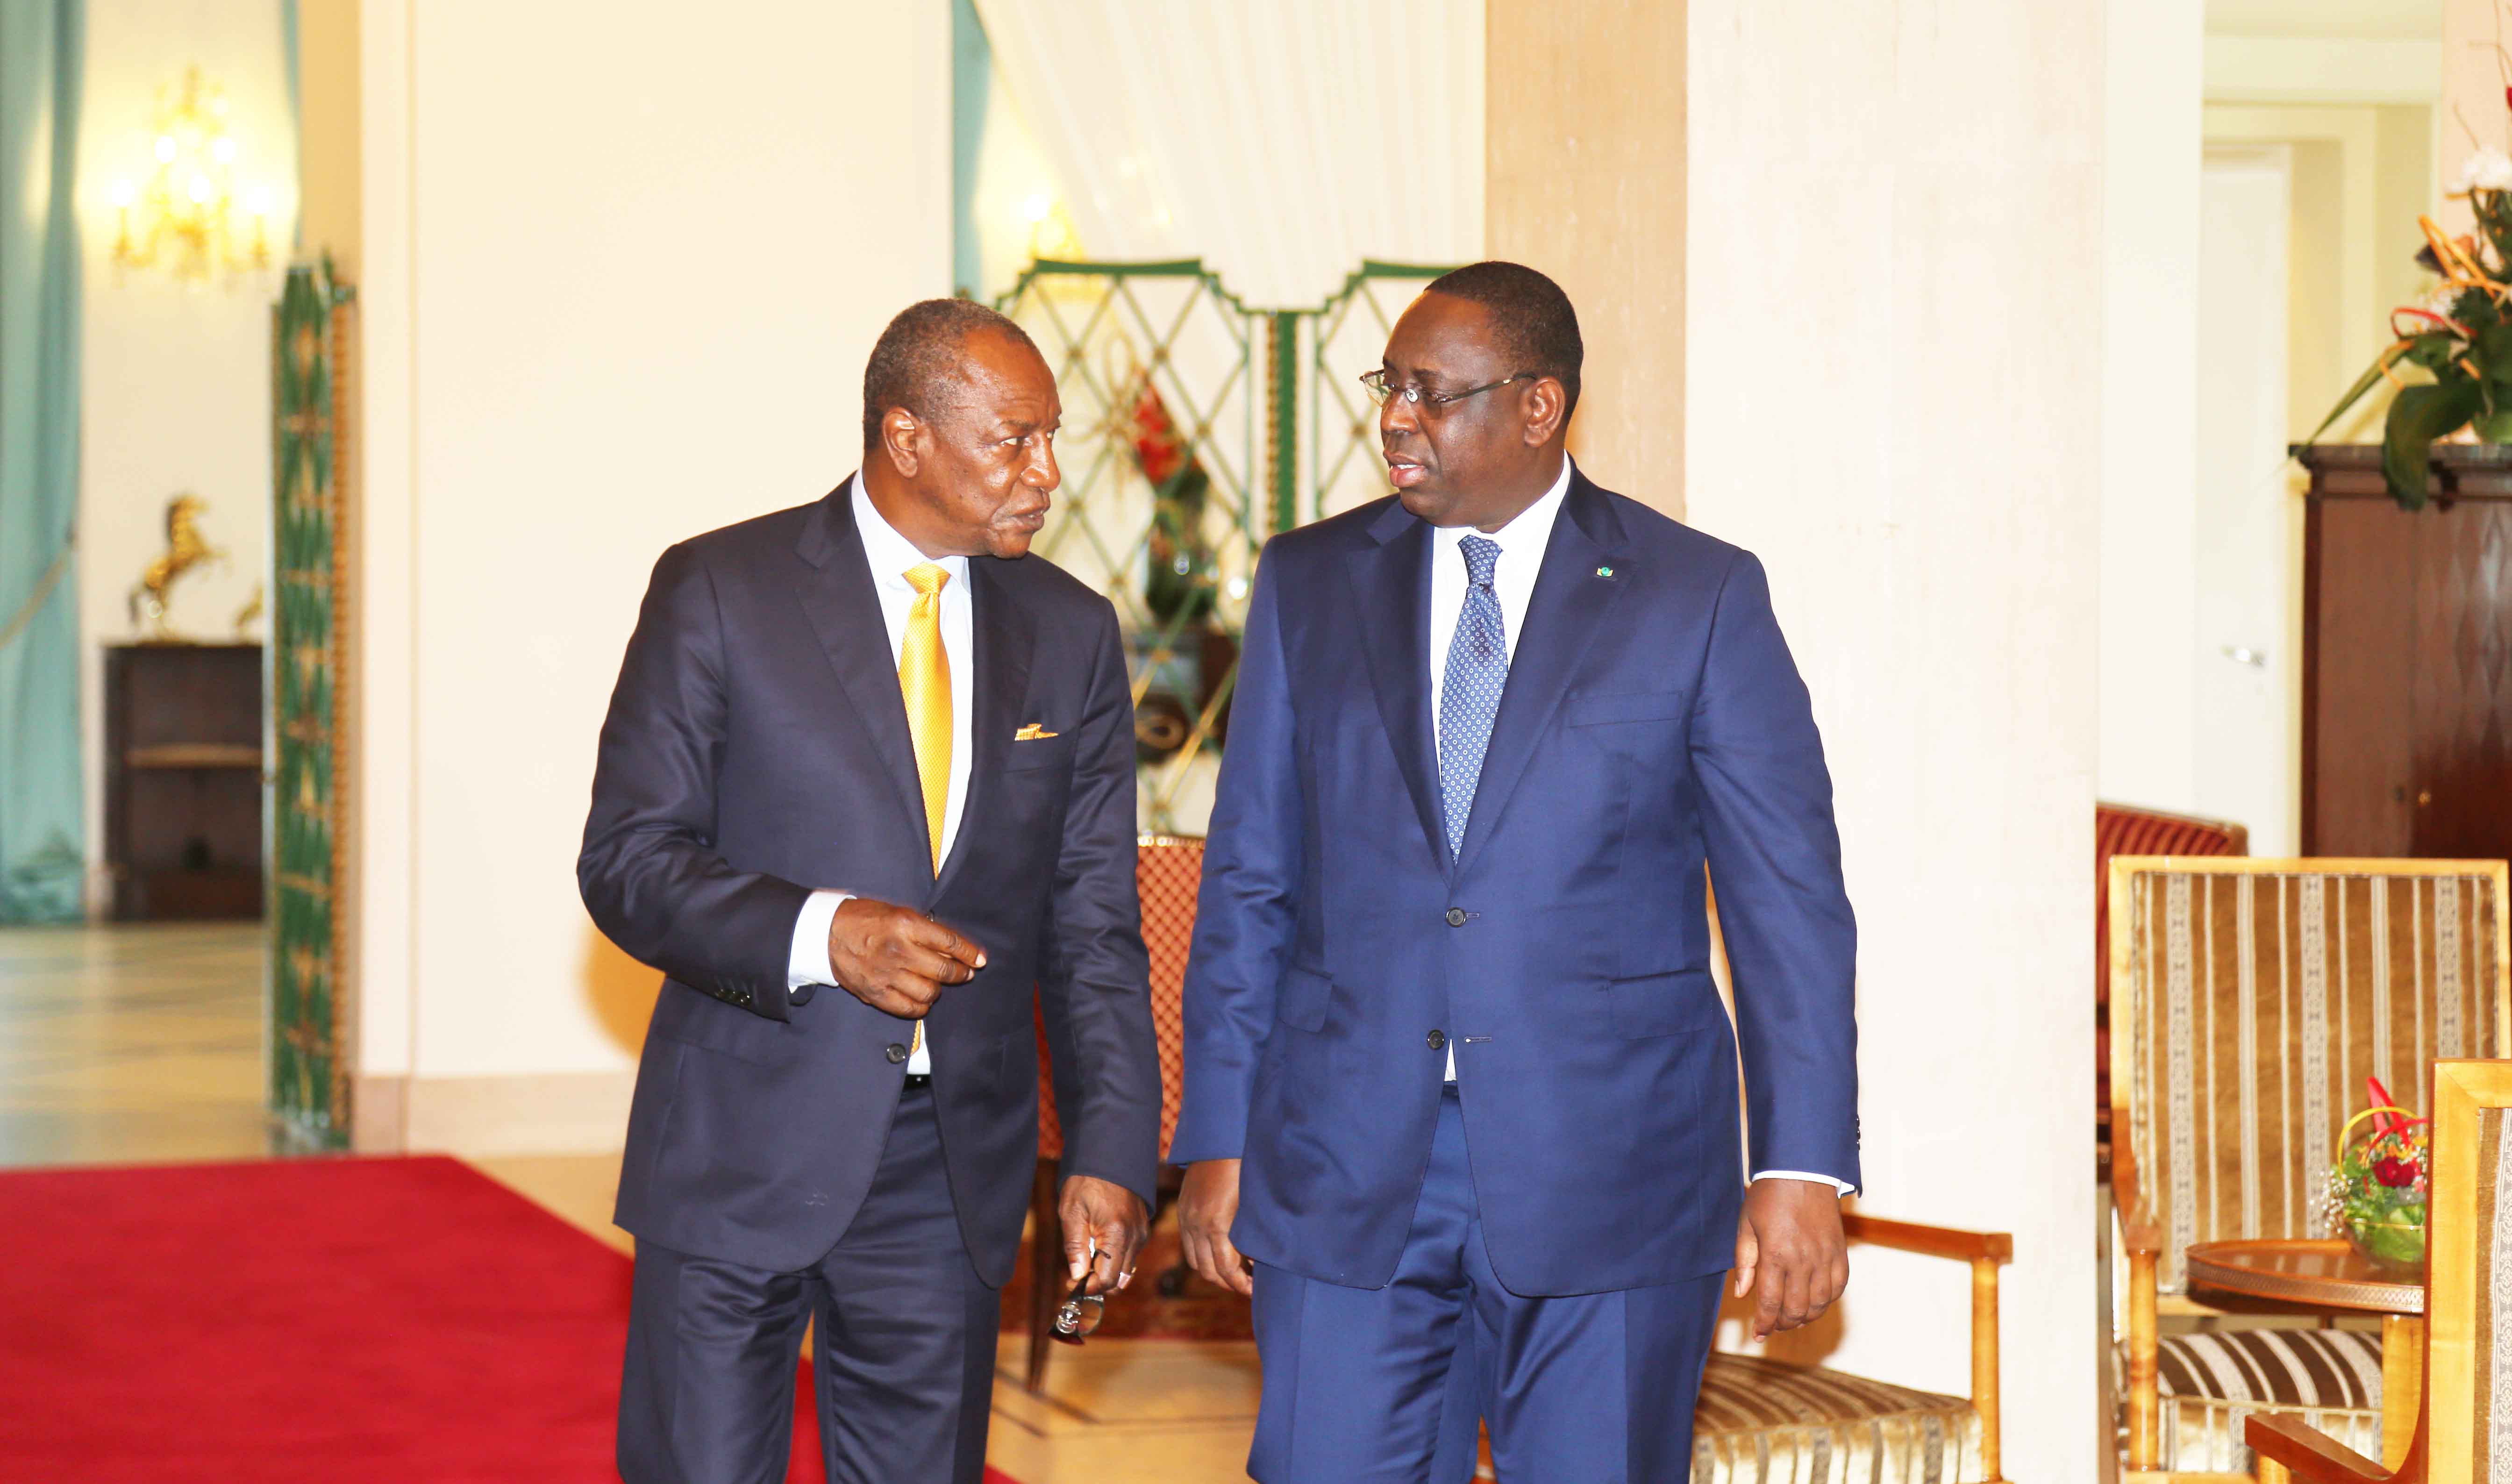 Interdiction du port du voile intégral : Le Président guinéen, Alpha Condé, propose au chef de l'Etat de faire le plaidoyer au niveau de la Cedeao